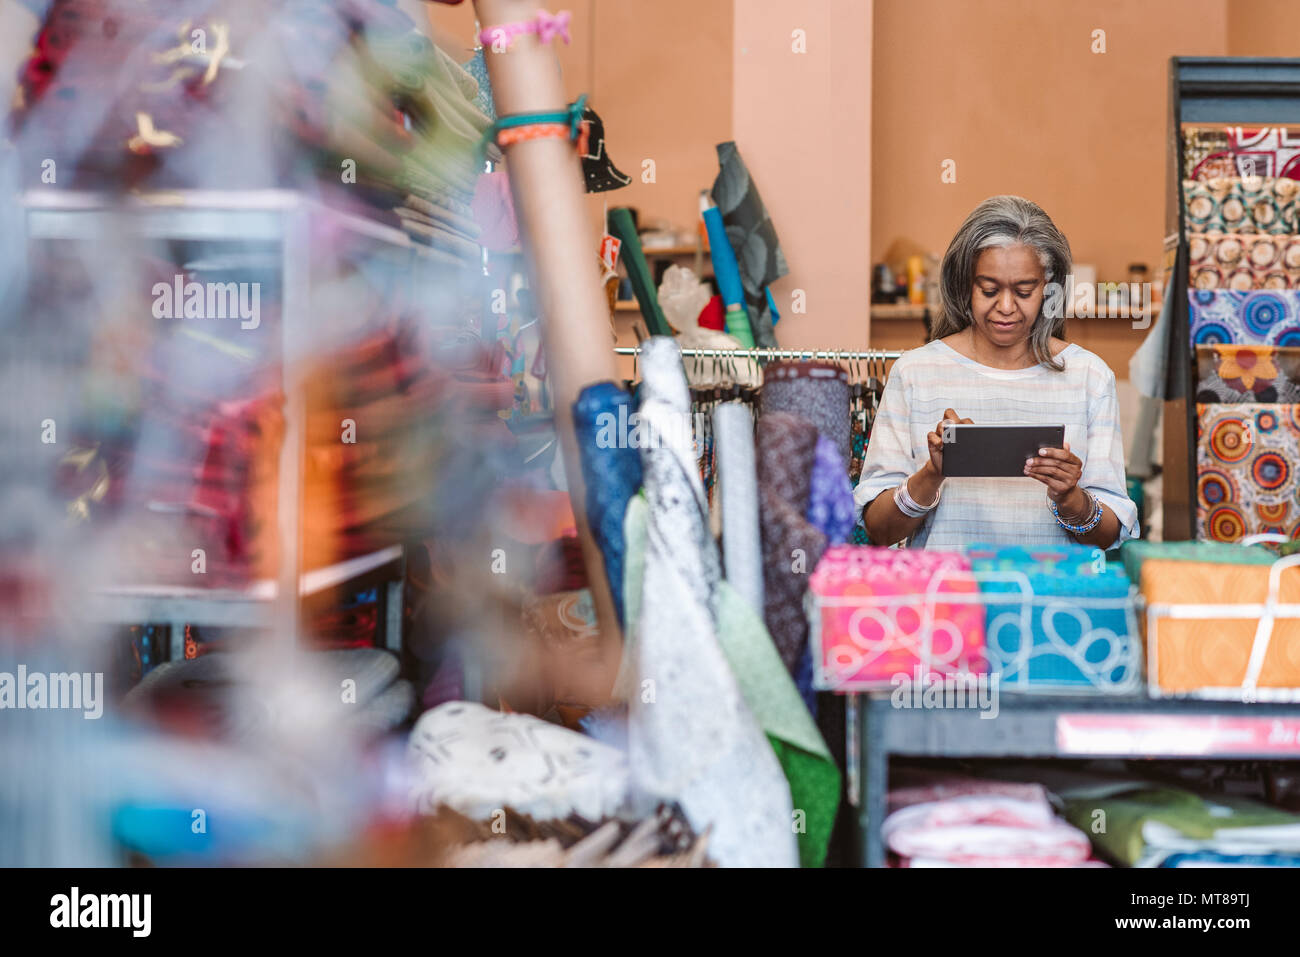 Reifen Stoff shop besitzer arbeiten mit einem digitalen tablet, während bei einem Zähler von bunten Tüchern und Textilien umgeben stehend Stockfoto